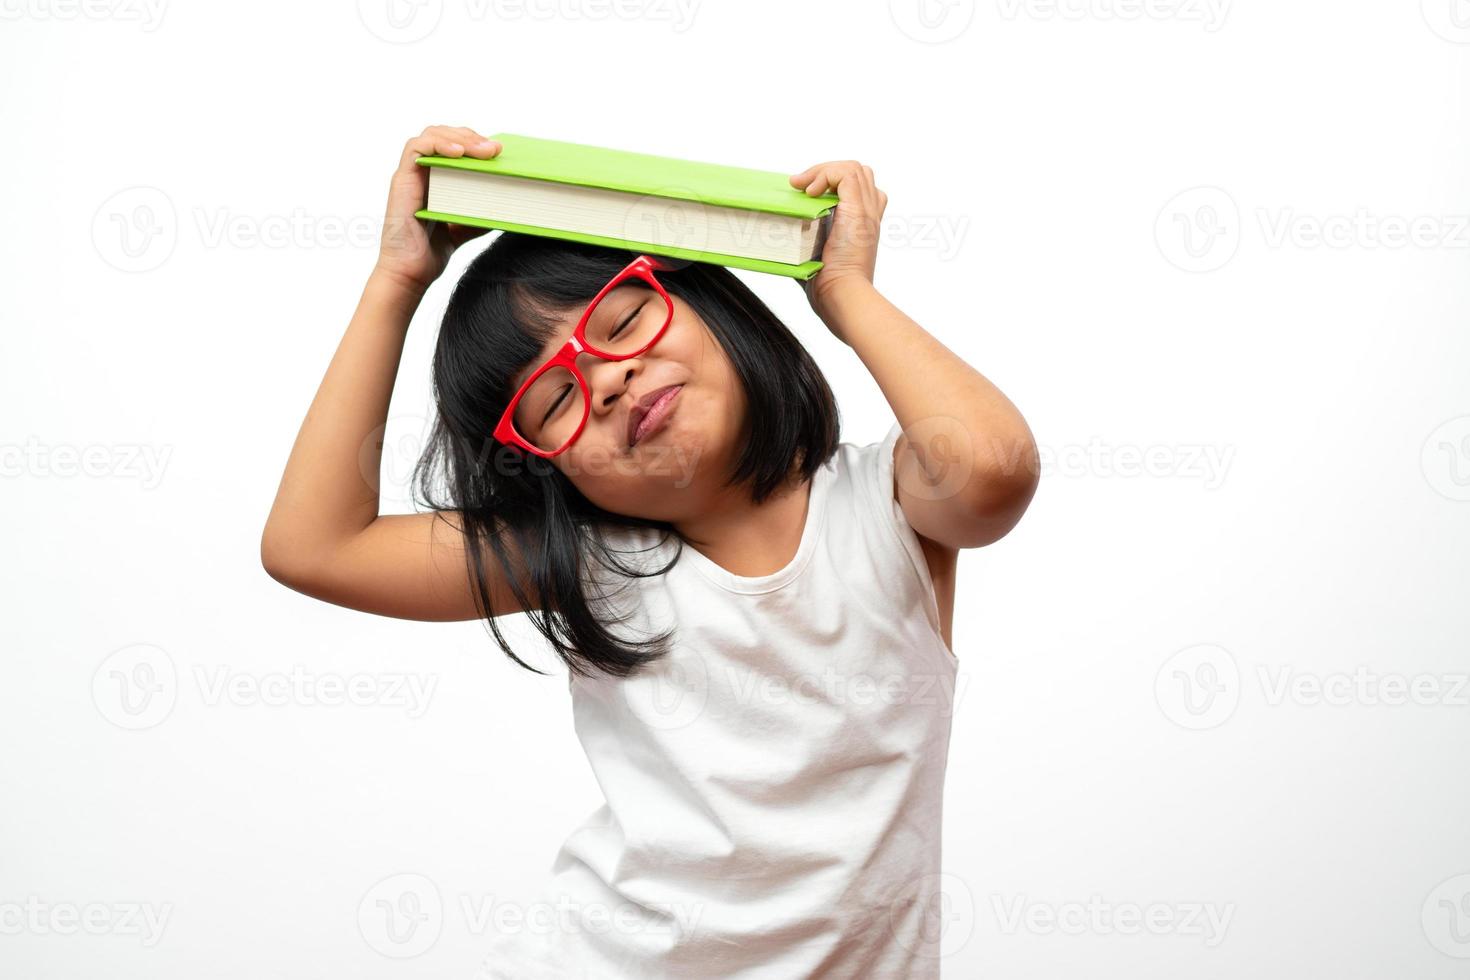 rolig och glad asiatisk liten förskoleflicka som bär röda glasögon som håller en grön bok på huvudet, på vit isolerad bakgrund. begreppet skolbarn och utbildning i grundskolan och förskolan foto